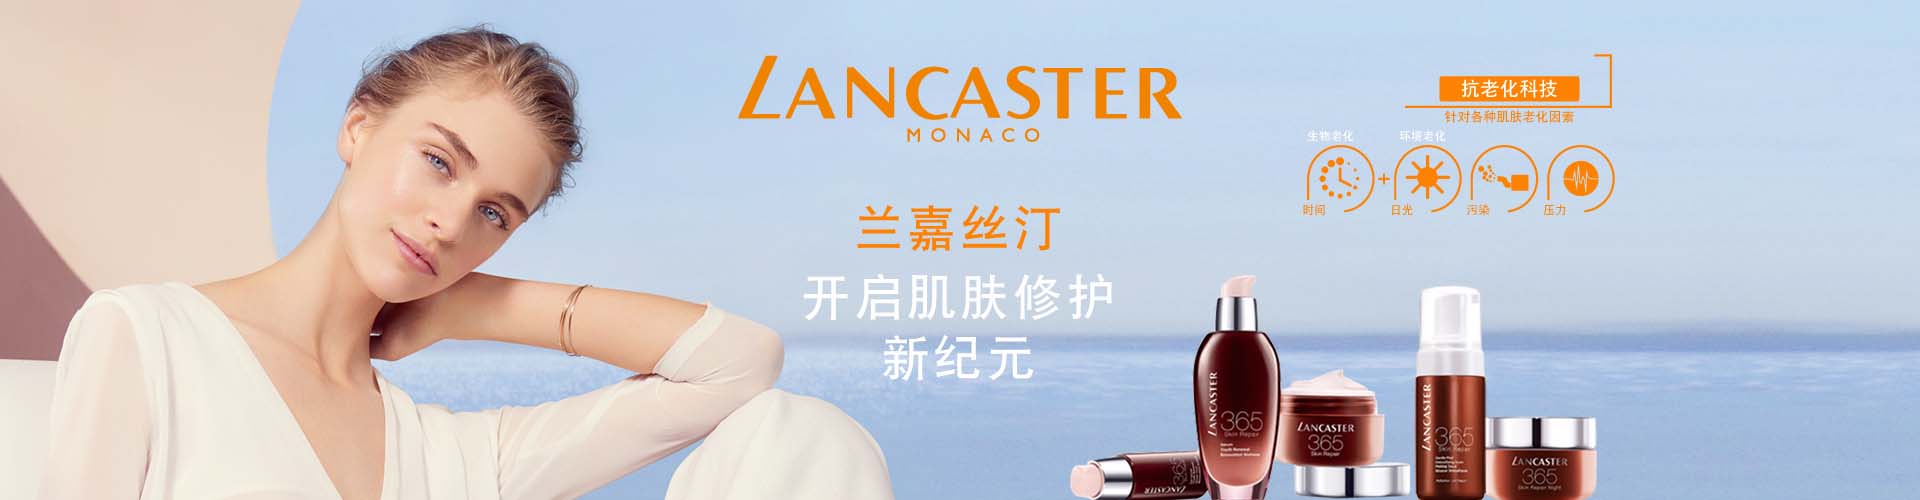 兰嘉丝汀_化妆护肤品成分介绍_Lancaster是哪个国家的品牌_是什么牌子